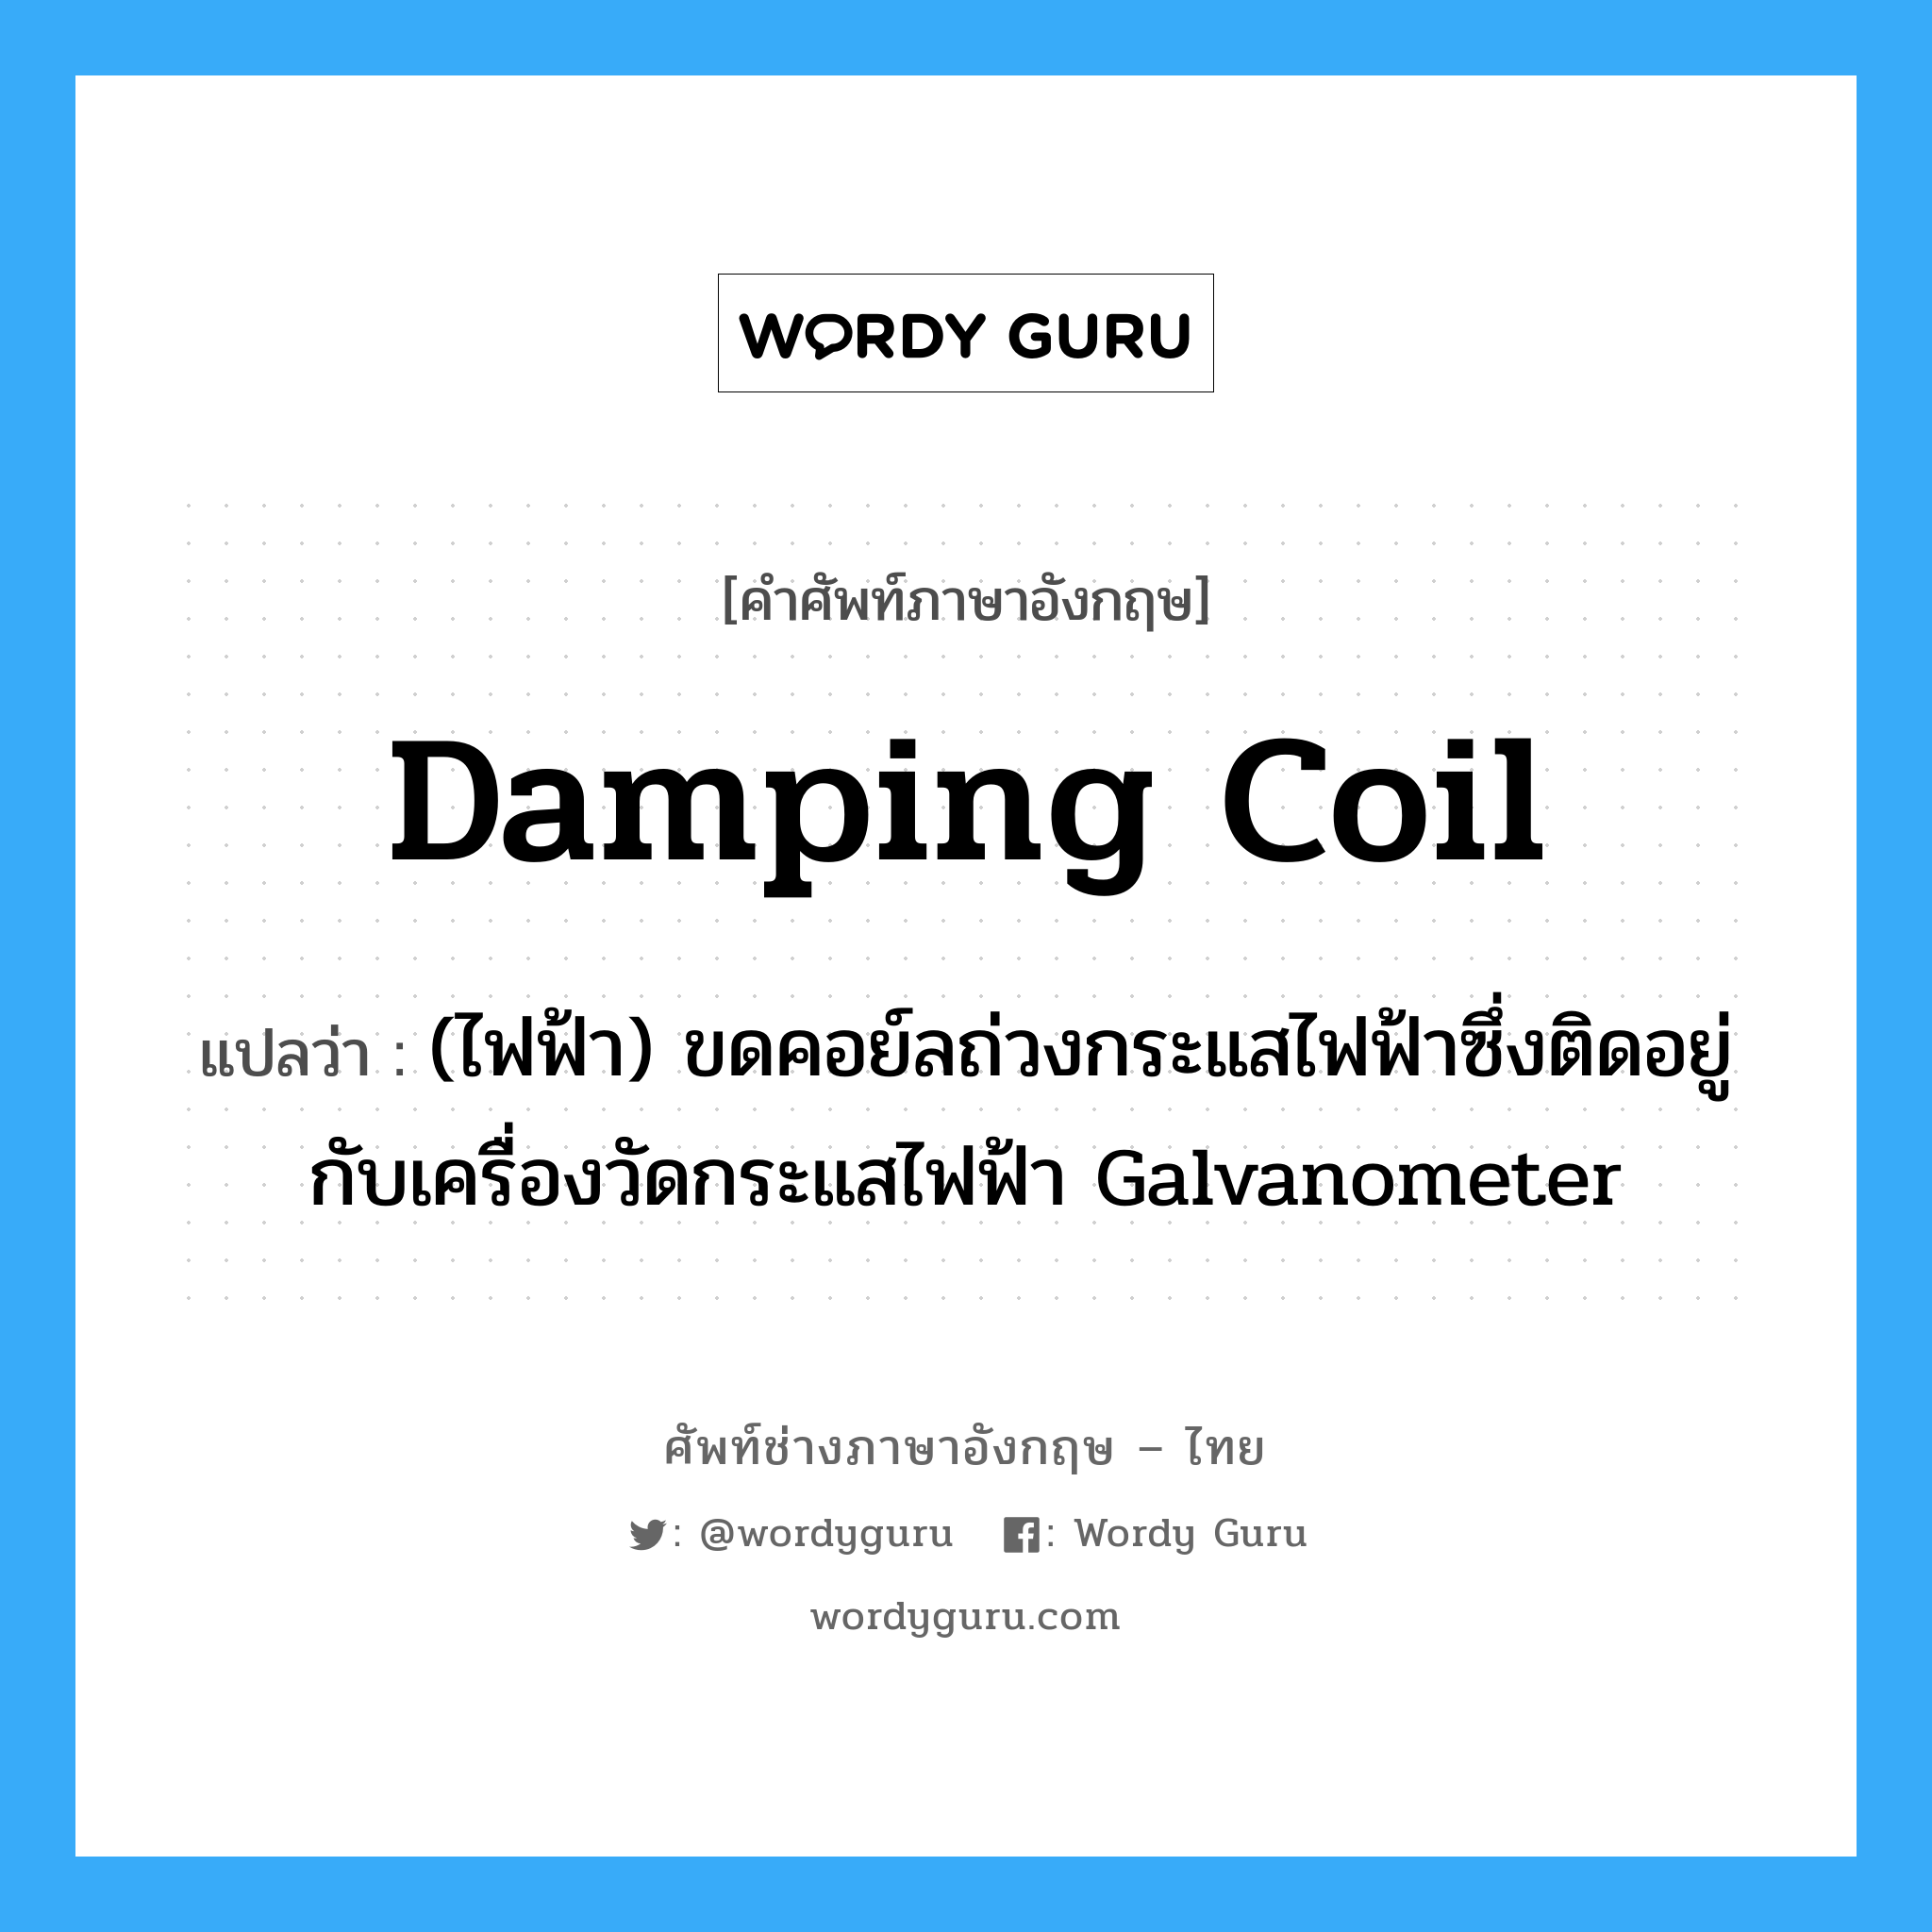 damping coil แปลว่า?, คำศัพท์ช่างภาษาอังกฤษ - ไทย damping coil คำศัพท์ภาษาอังกฤษ damping coil แปลว่า (ไฟฟ้า) ขดคอย์ลถ่วงกระแสไฟฟ้าซึ่งติดอยู่กับเครื่องวัดกระแสไฟฟ้า Galvanometer